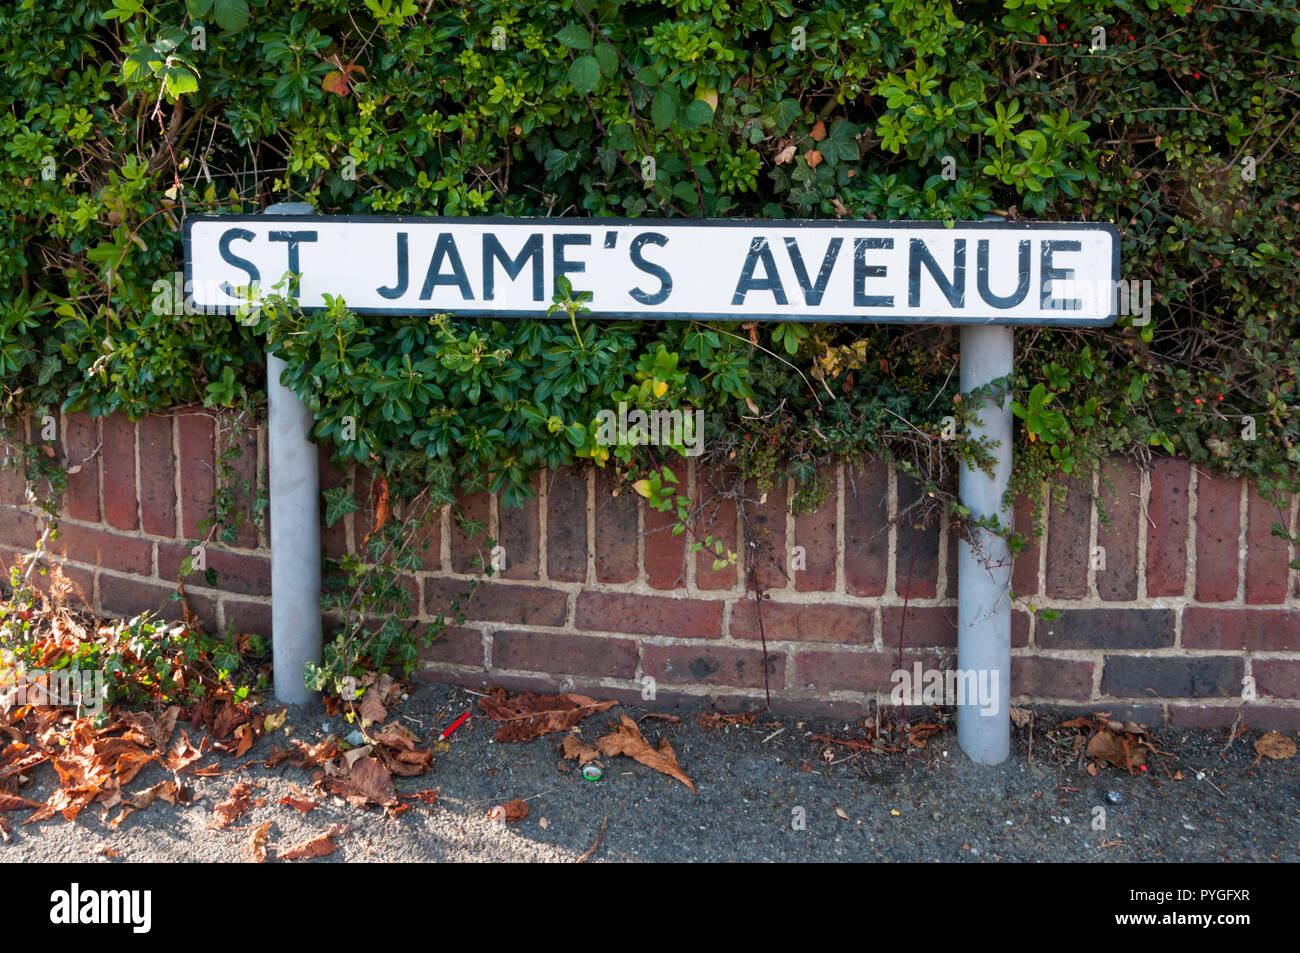 Nom de rue signe lit St Jame's Avenue, avec une apostrophe mal placés. Banque D'Images